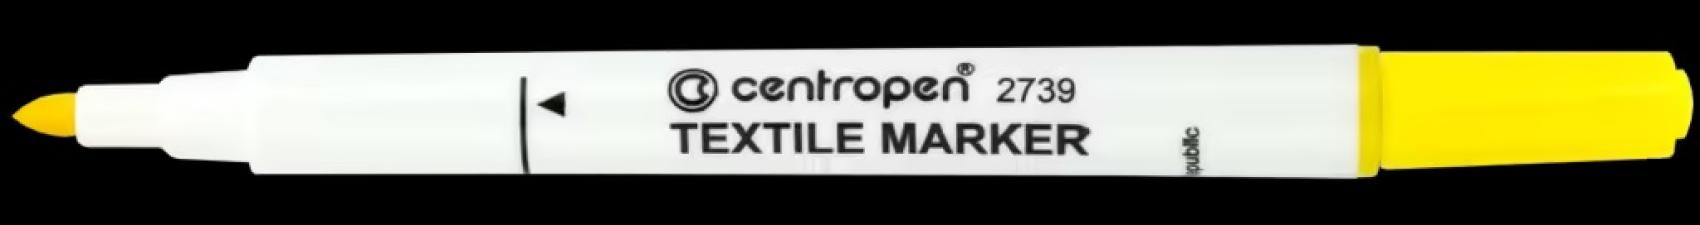 Popisova Centropen 2739 na textil nevyprateln lut